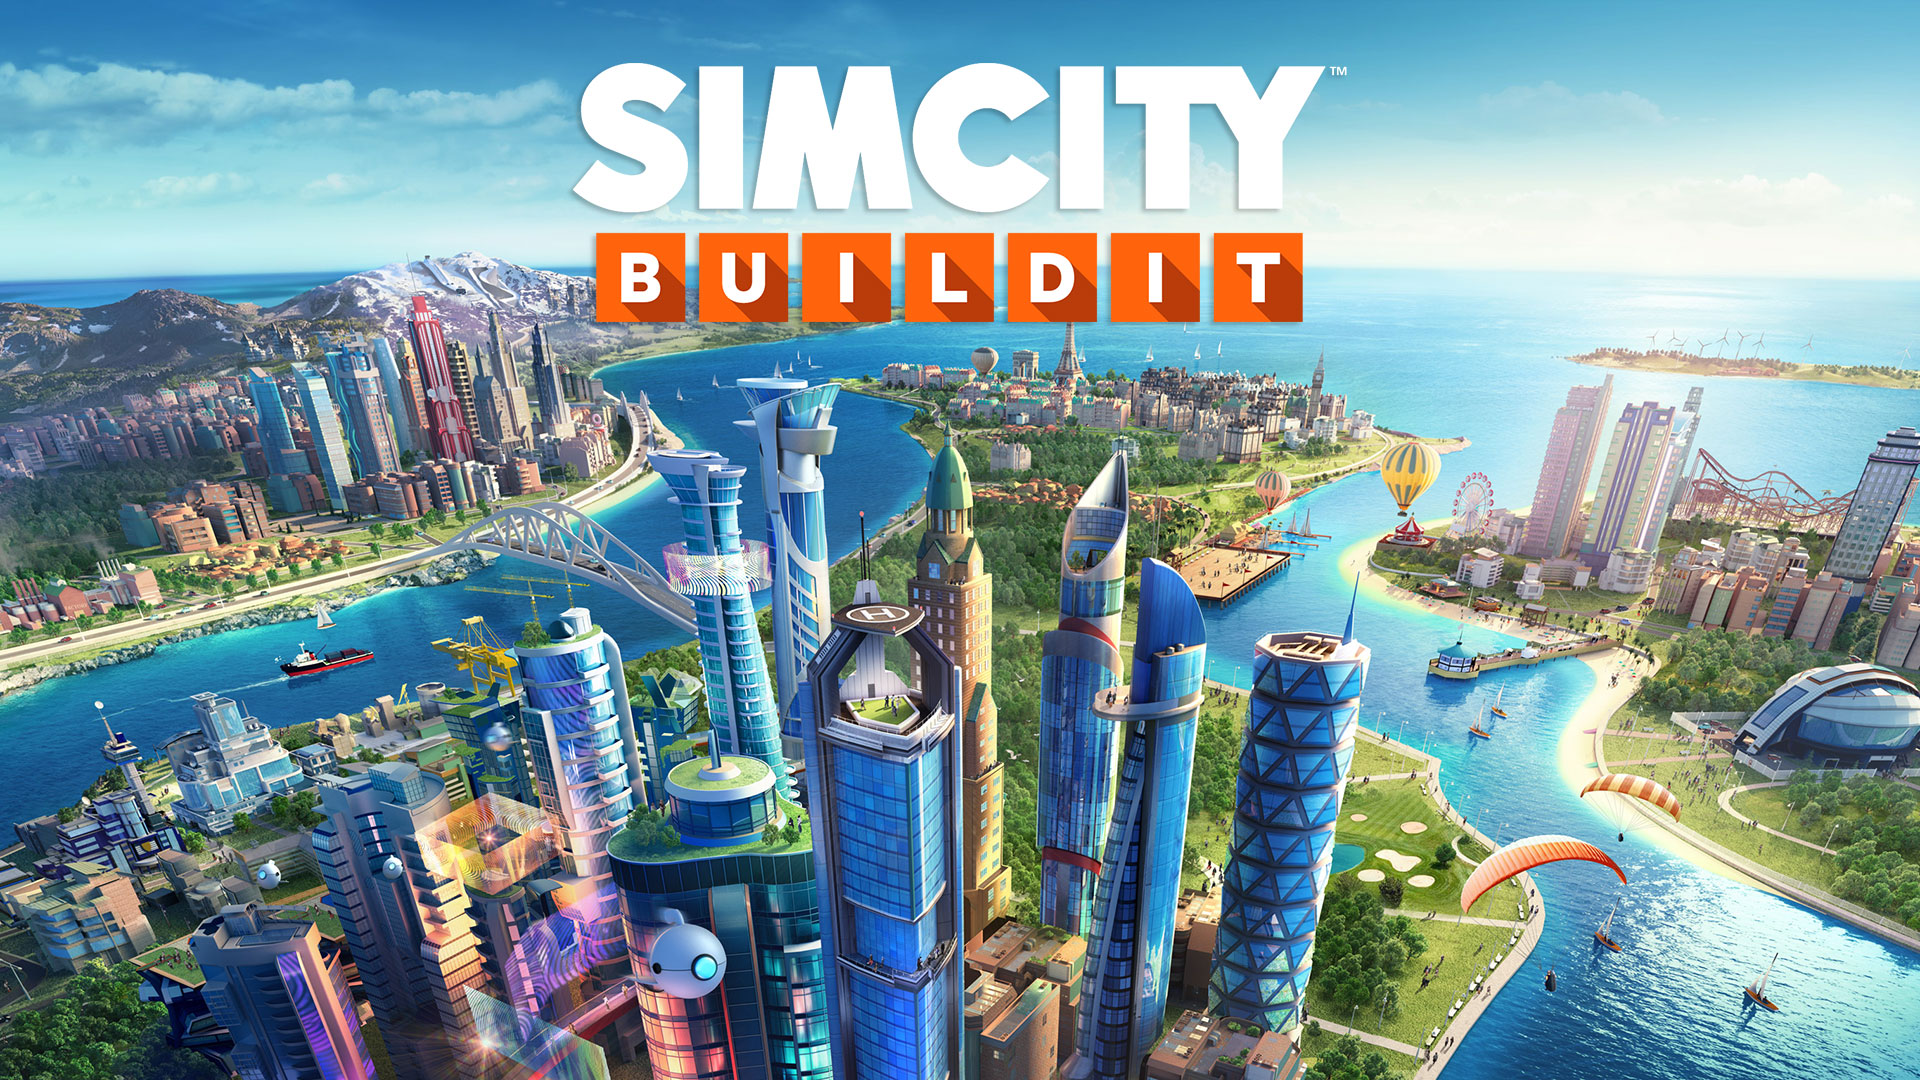 Скачать обои Simcity Buildit на телефон бесплатно